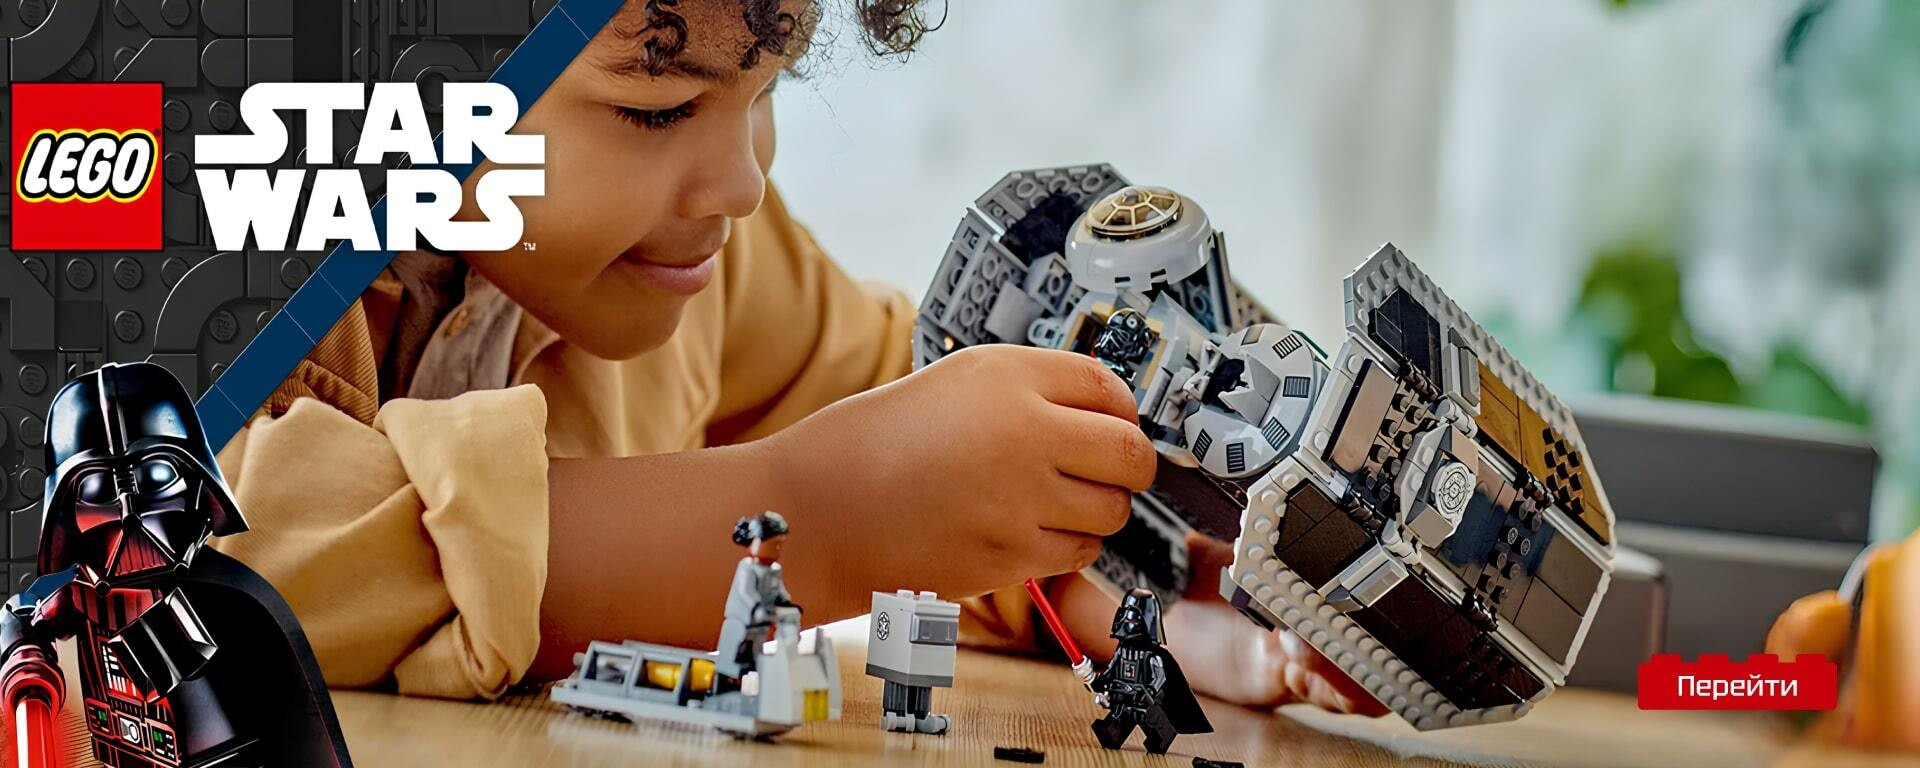 Замовити конструктор Лего з серії ‘Зоряні війни’ в магазині BrickStore